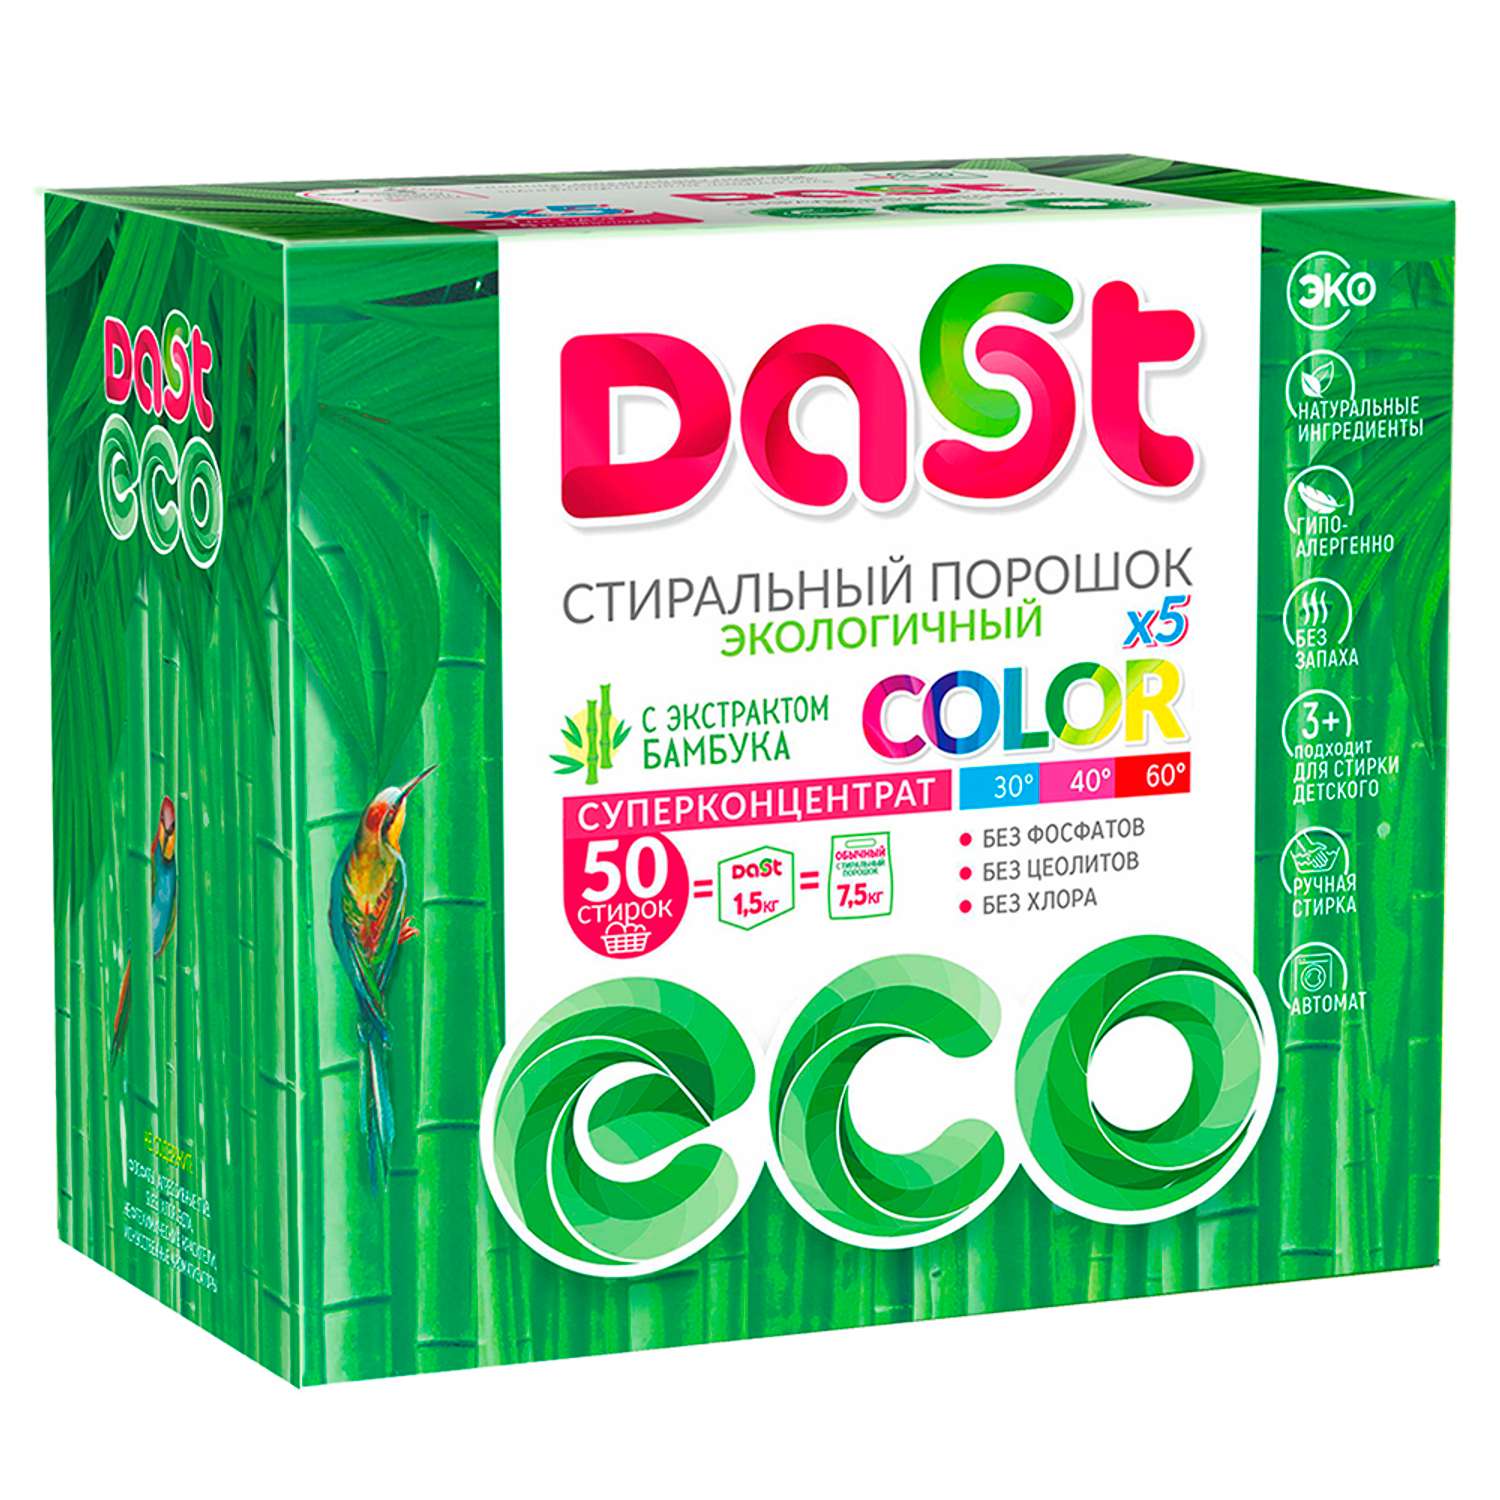 Стиральный порошок DAST экологичный для цветного белья с экстрактом бамбука 50 стирок - фото 1